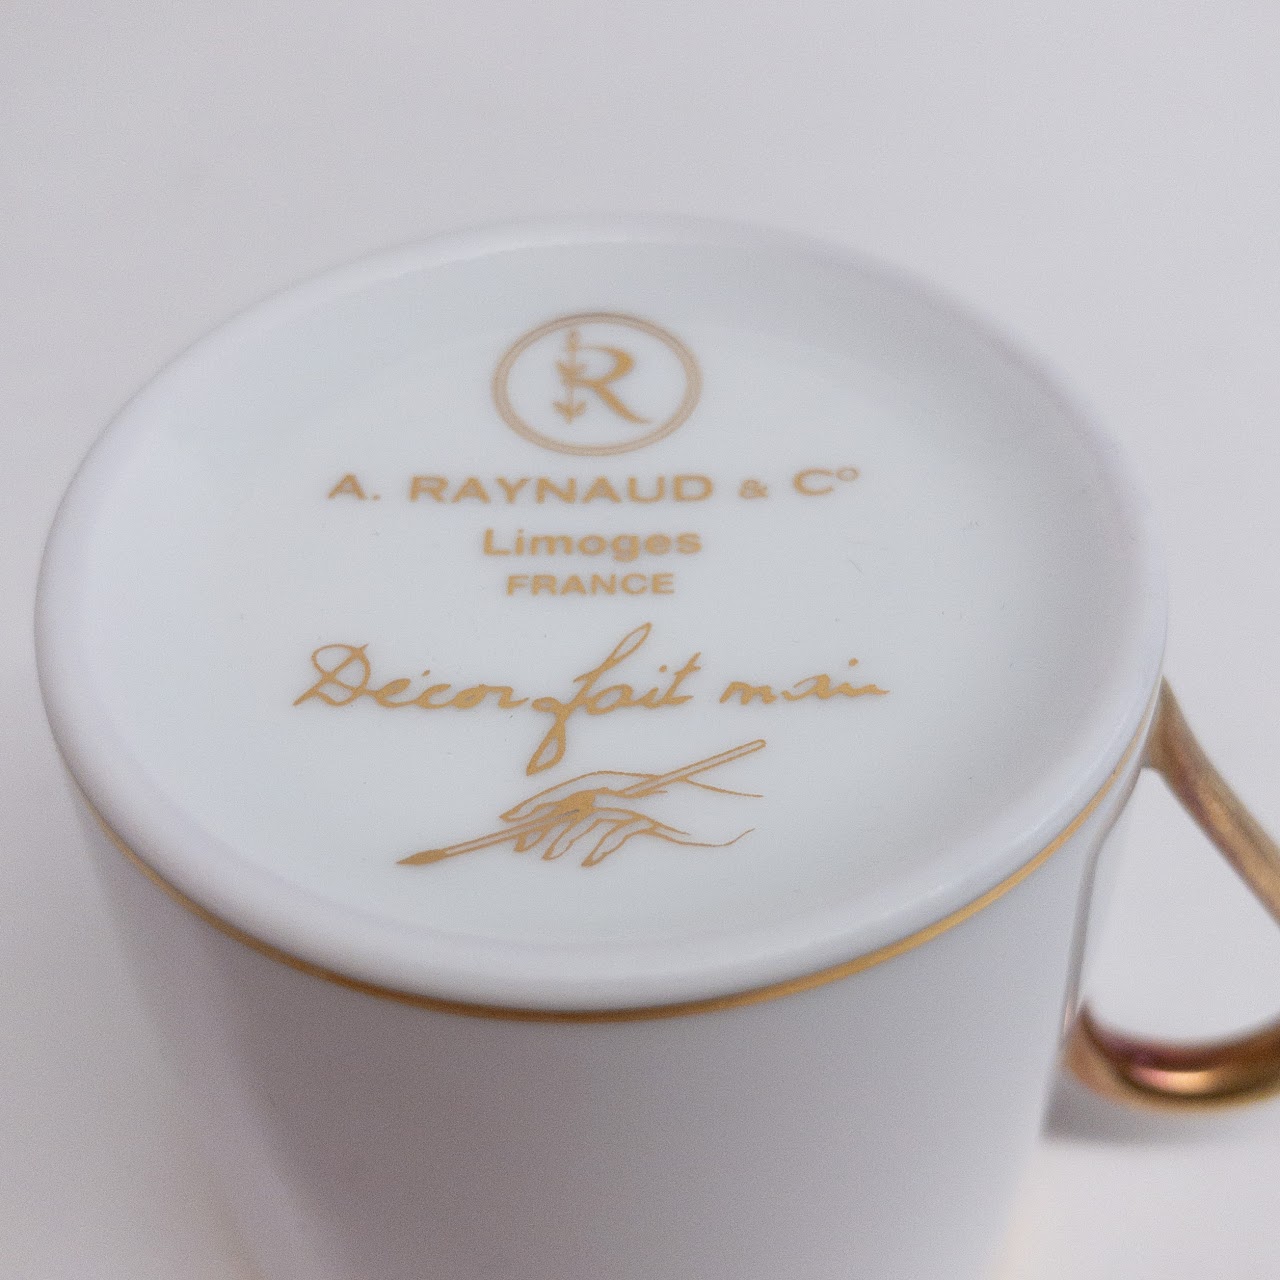 A. Raynaud & Co. Limoges Demitasse Set 1